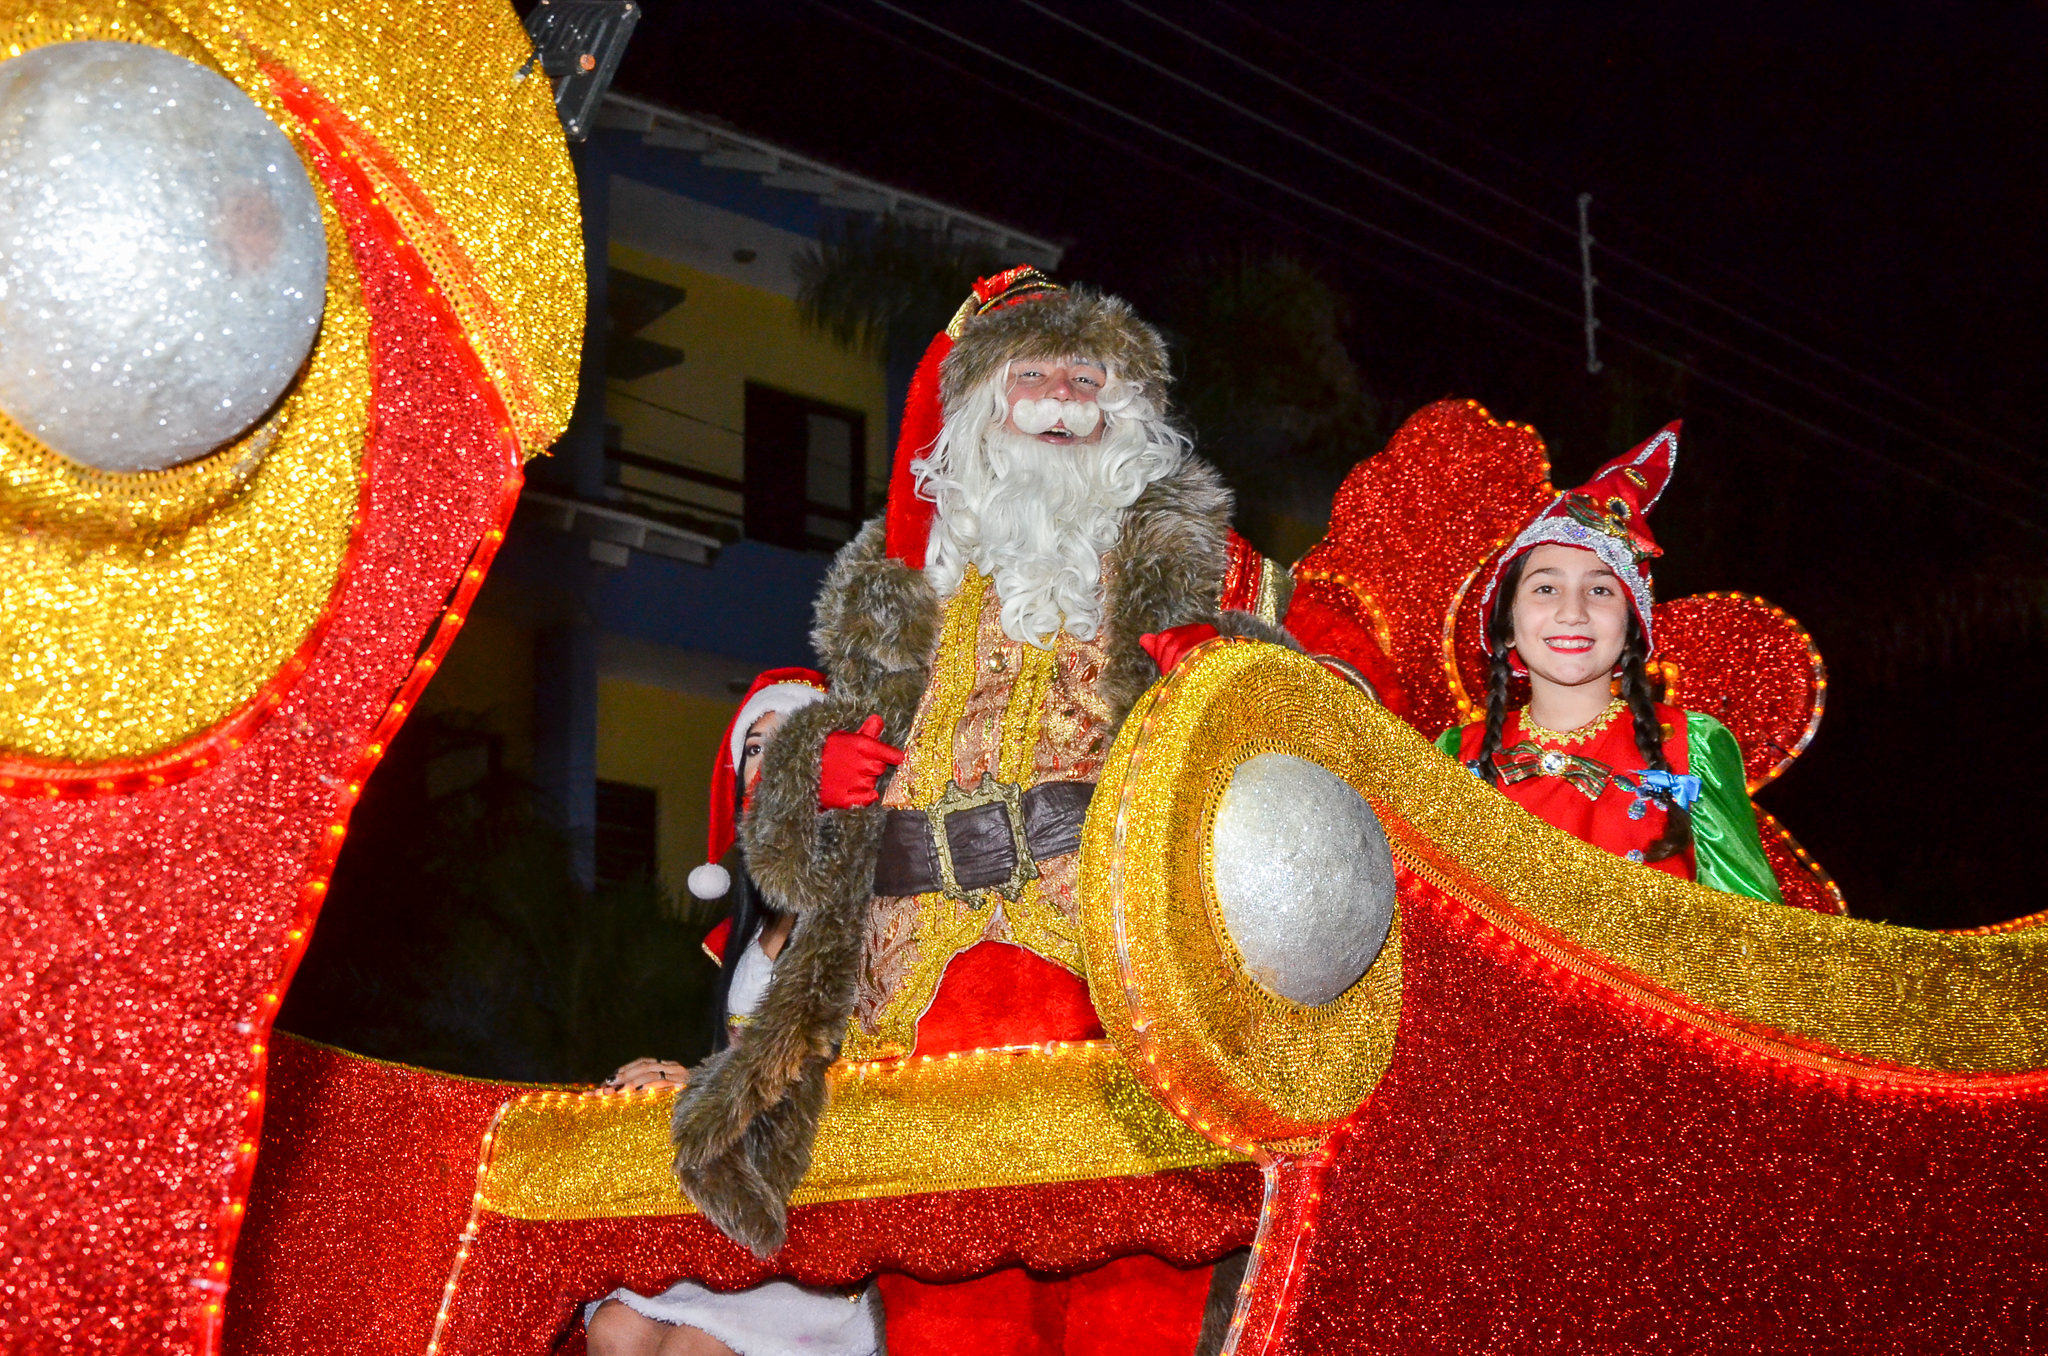 Parada de Natal é sucesso e atrai milhares em Bertioga